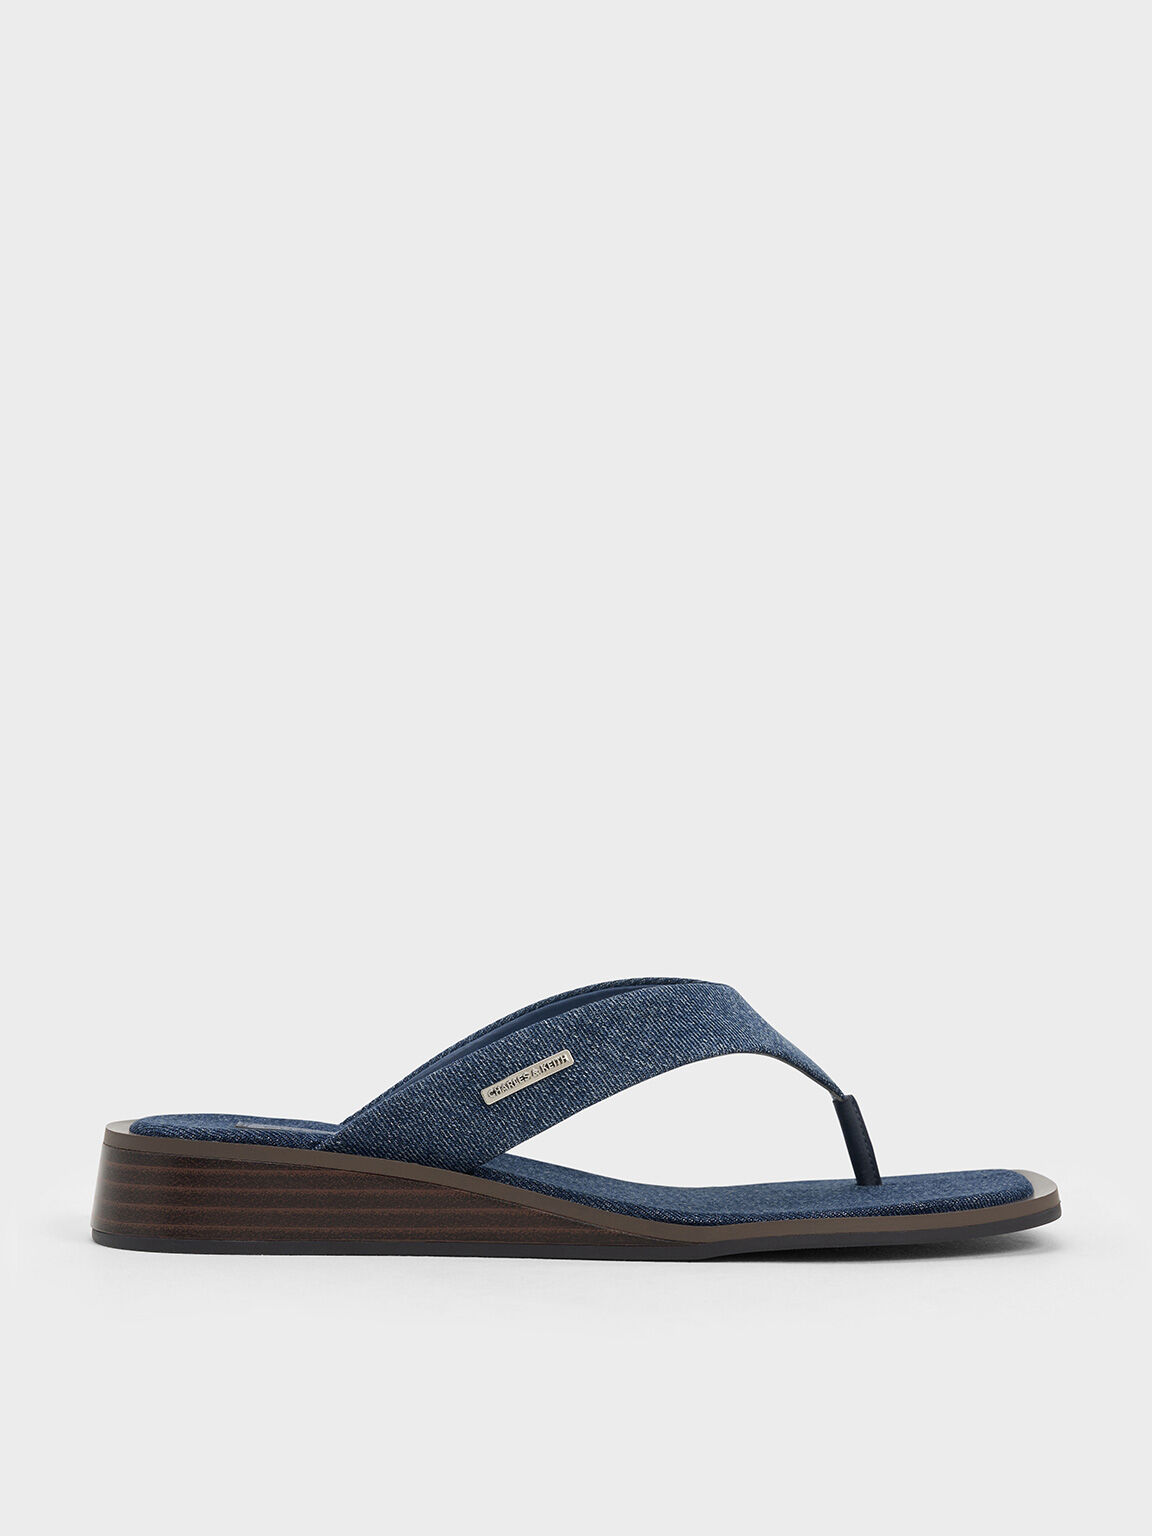 Denim V-Strap Wedge Thong Sandals, Blue, hi-res